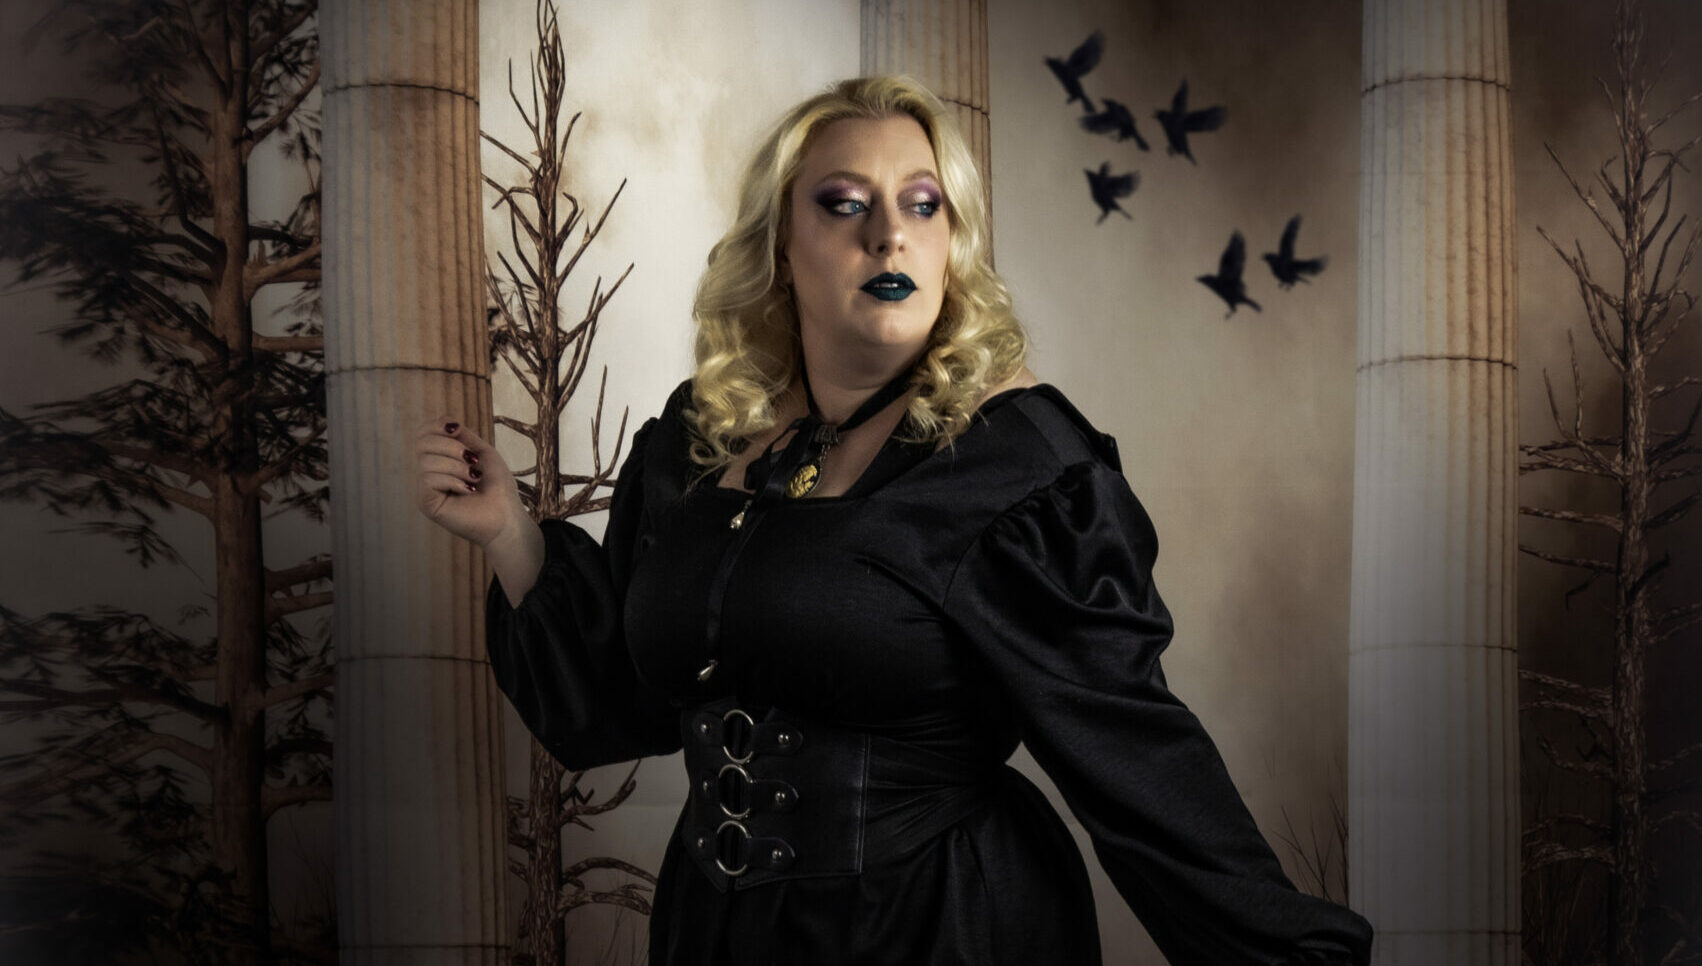 Gothique : je me transforme en sorcière ronde le temps d’un shooting.